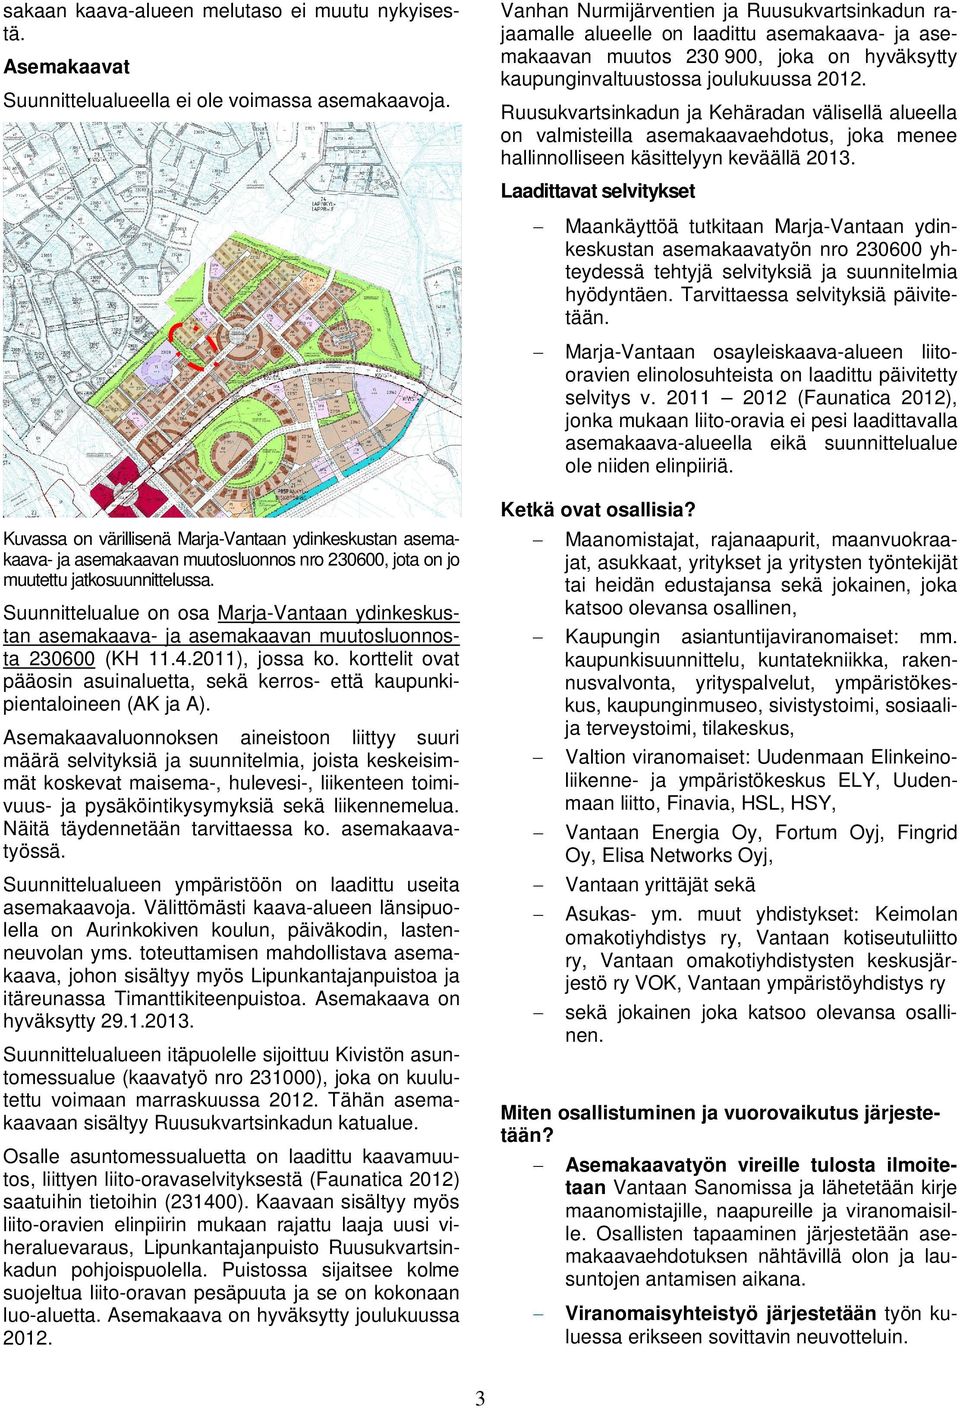 Ruusukvartsinkadun ja Kehäradan välisellä alueella on valmisteilla asemakaavaehdotus, joka menee hallinnolliseen käsittelyyn keväällä 2013.